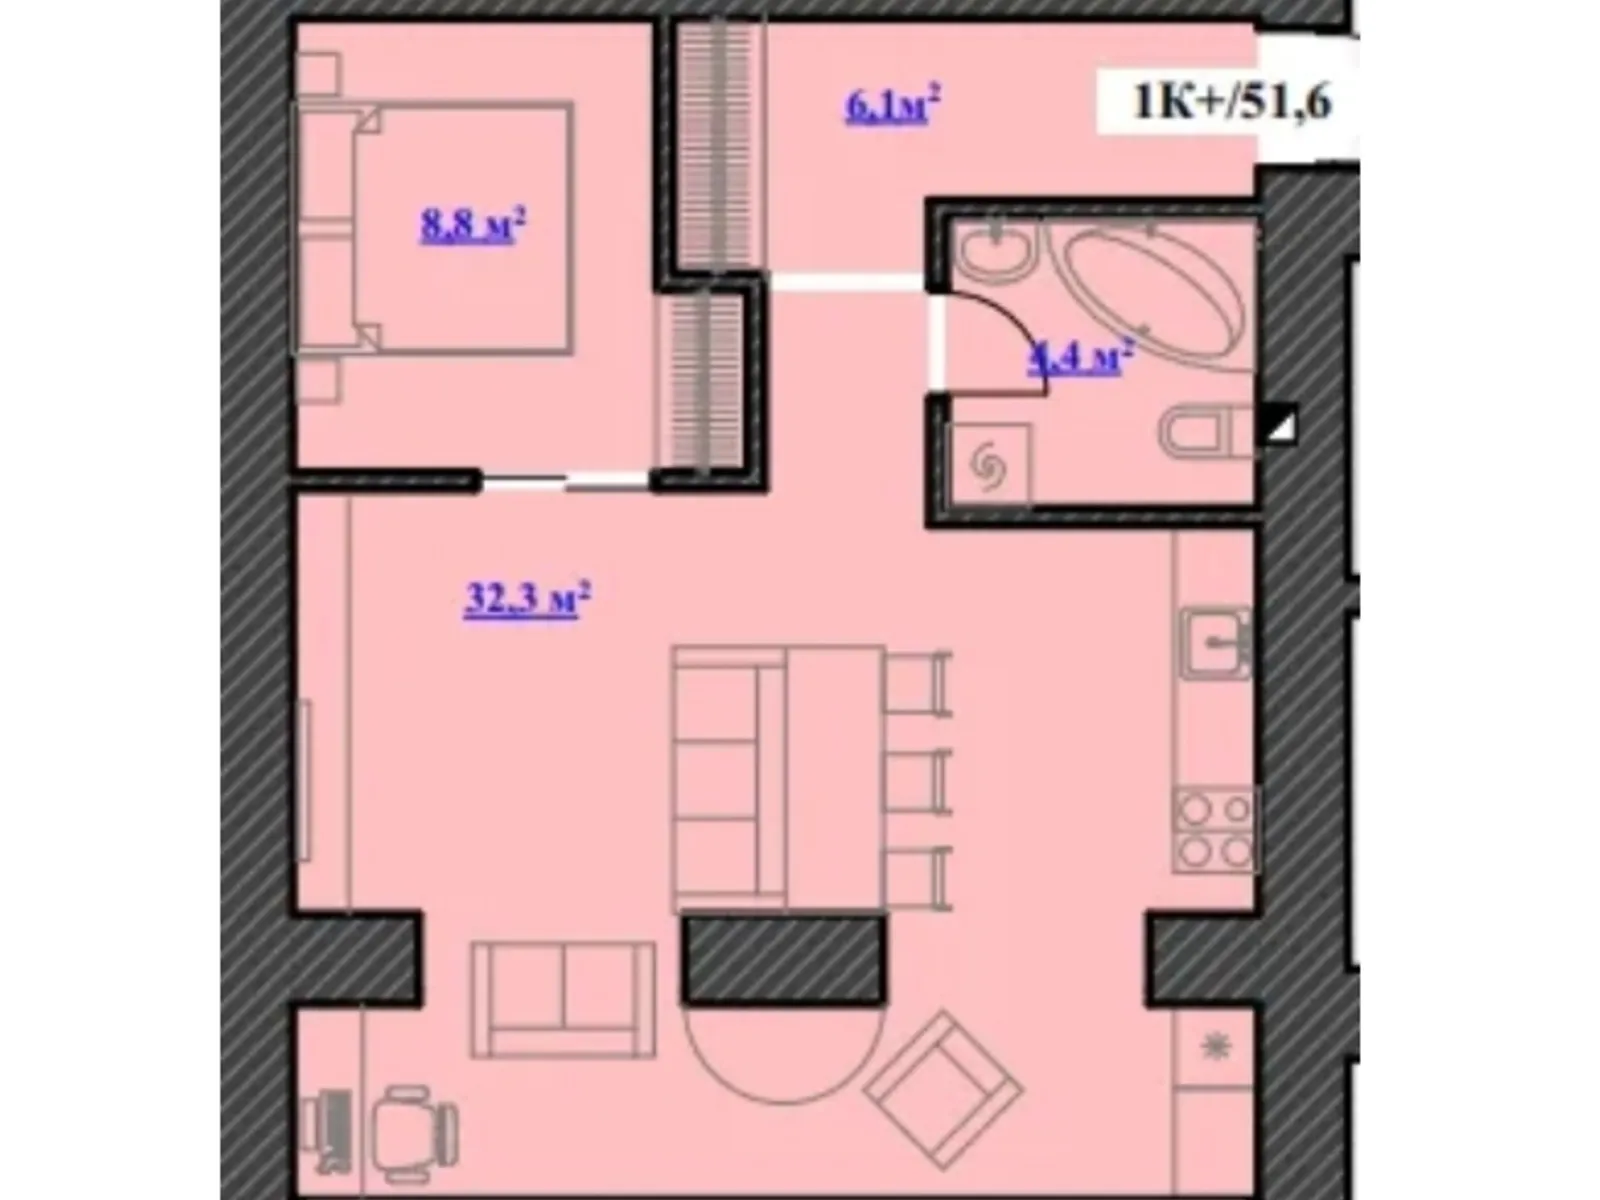 Продається 1-кімнатна квартира 51.6 кв. м у Микитинцях, цена: 1264200 грн - фото 1